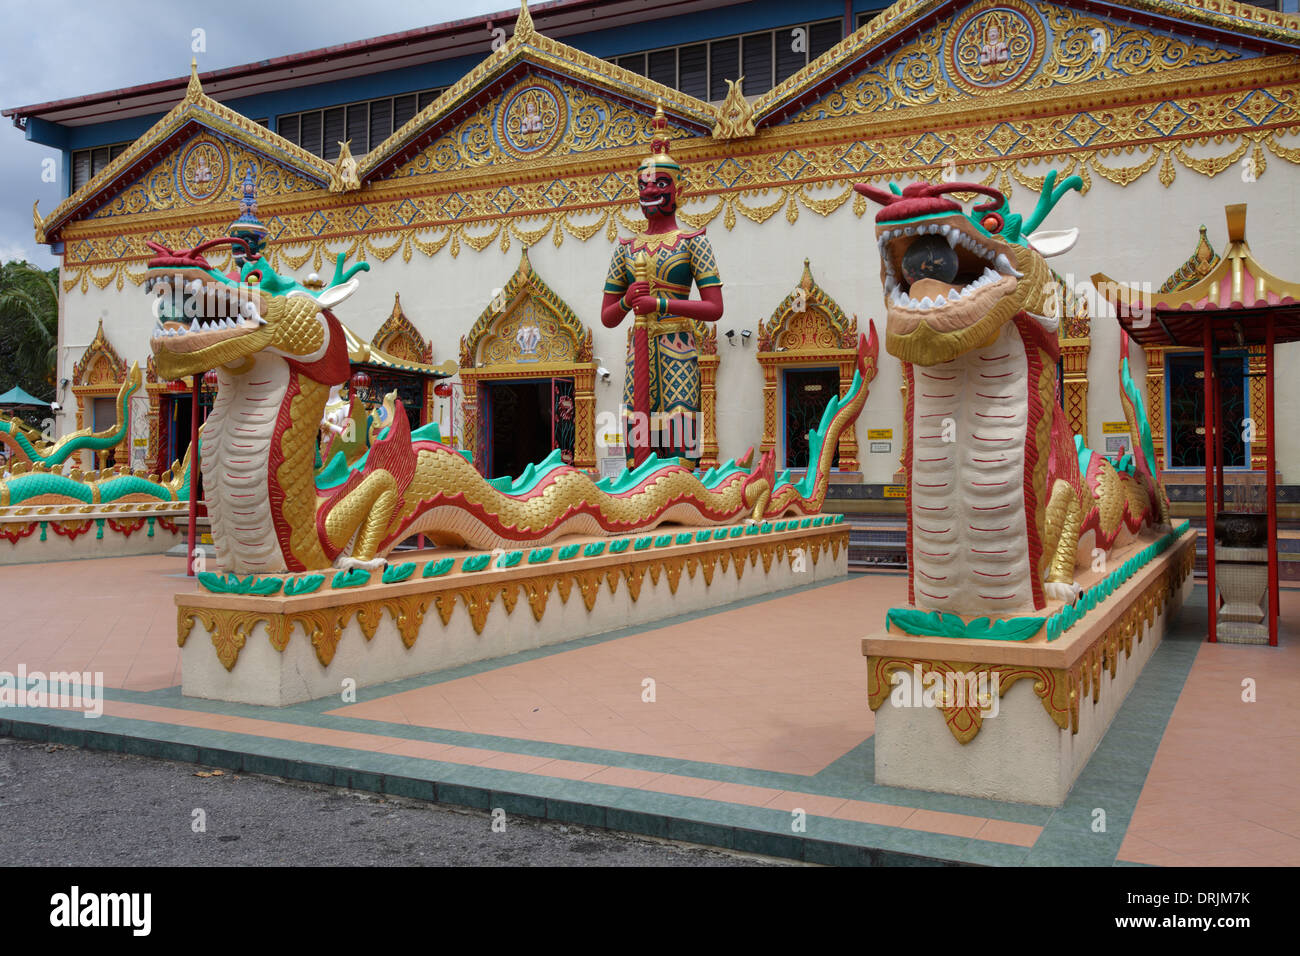 Guarding snakes at Wat Chayamangkalaram temple, Penang, Malaysia Stock Photo